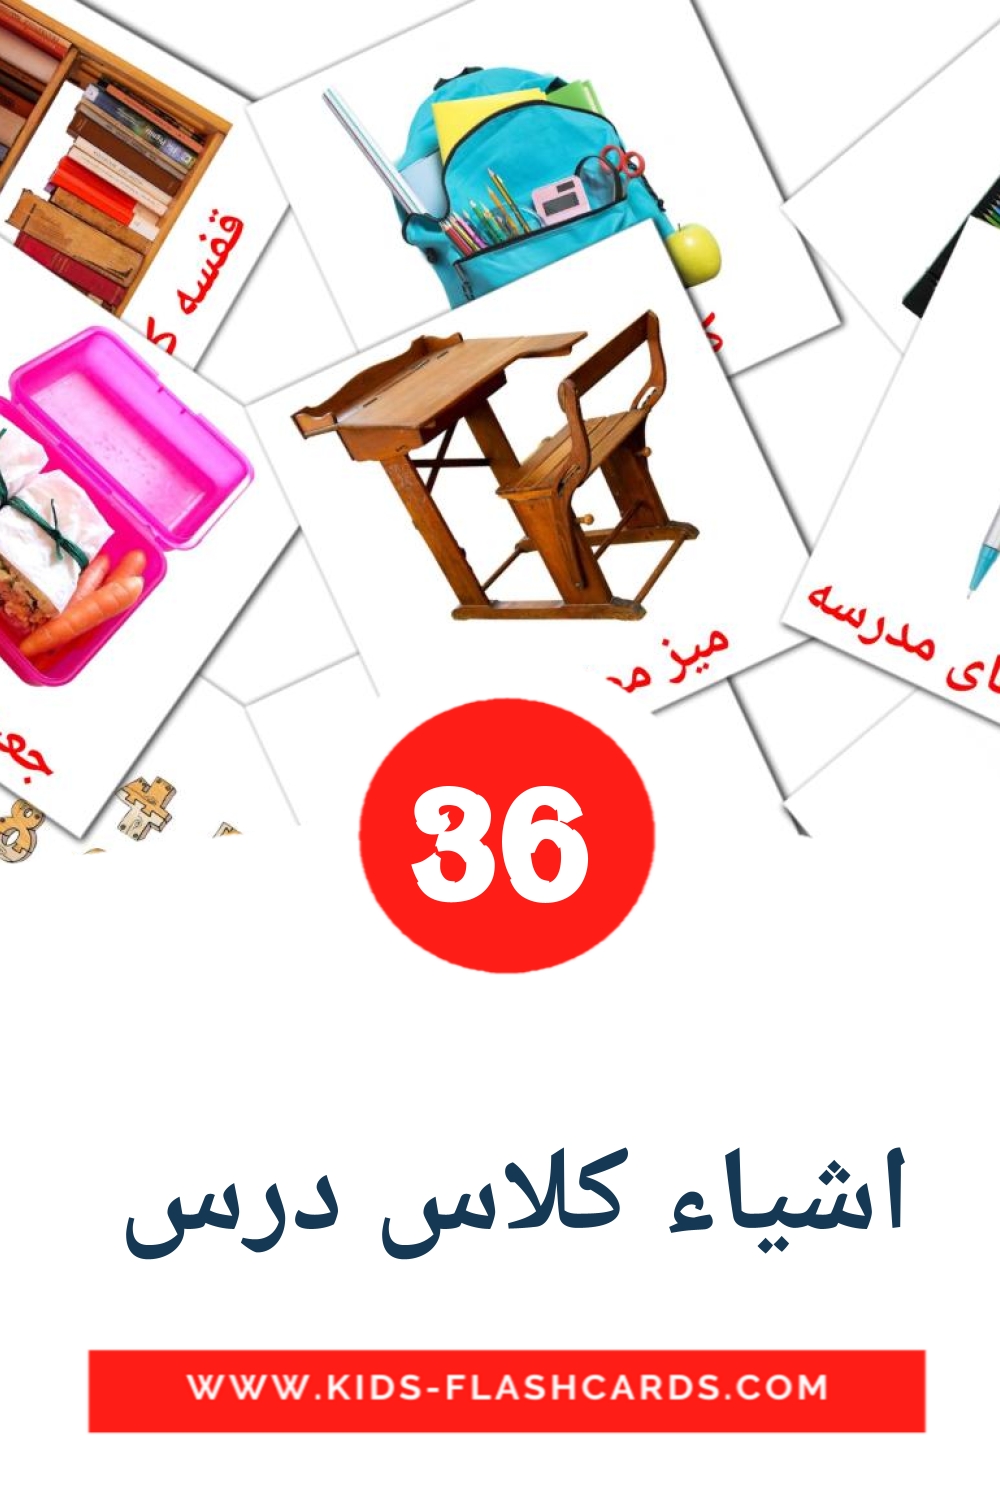 36 اشیاء کلاس درس  fotokaarten voor kleuters in het perzisch